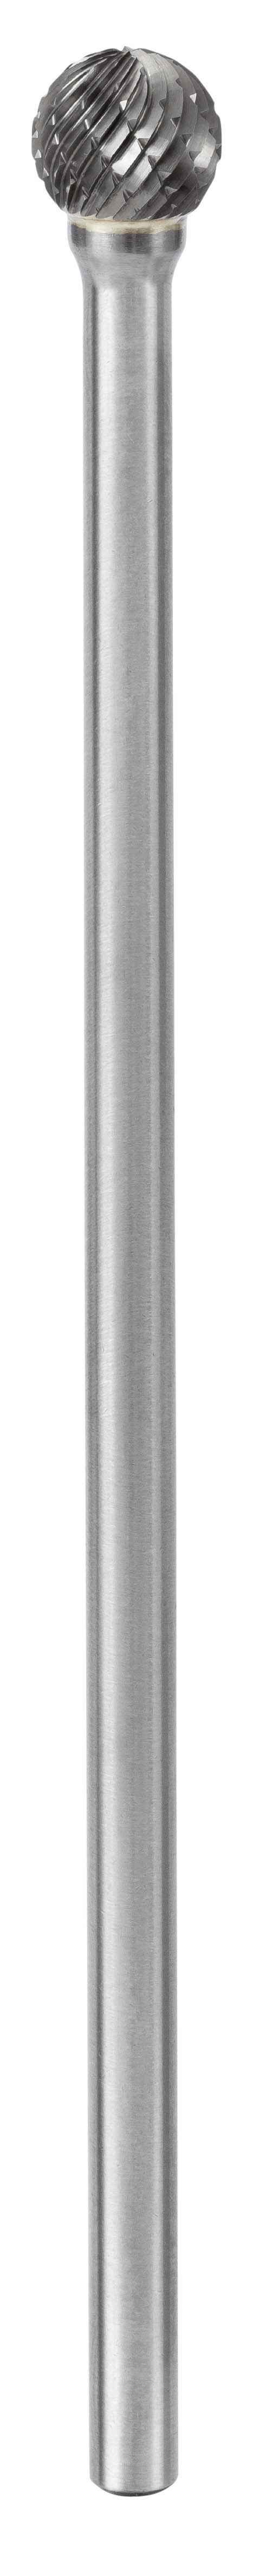 643 Fraise lime carbure sphérique avec denture croisée Ø3,2 mm - Coupe A 